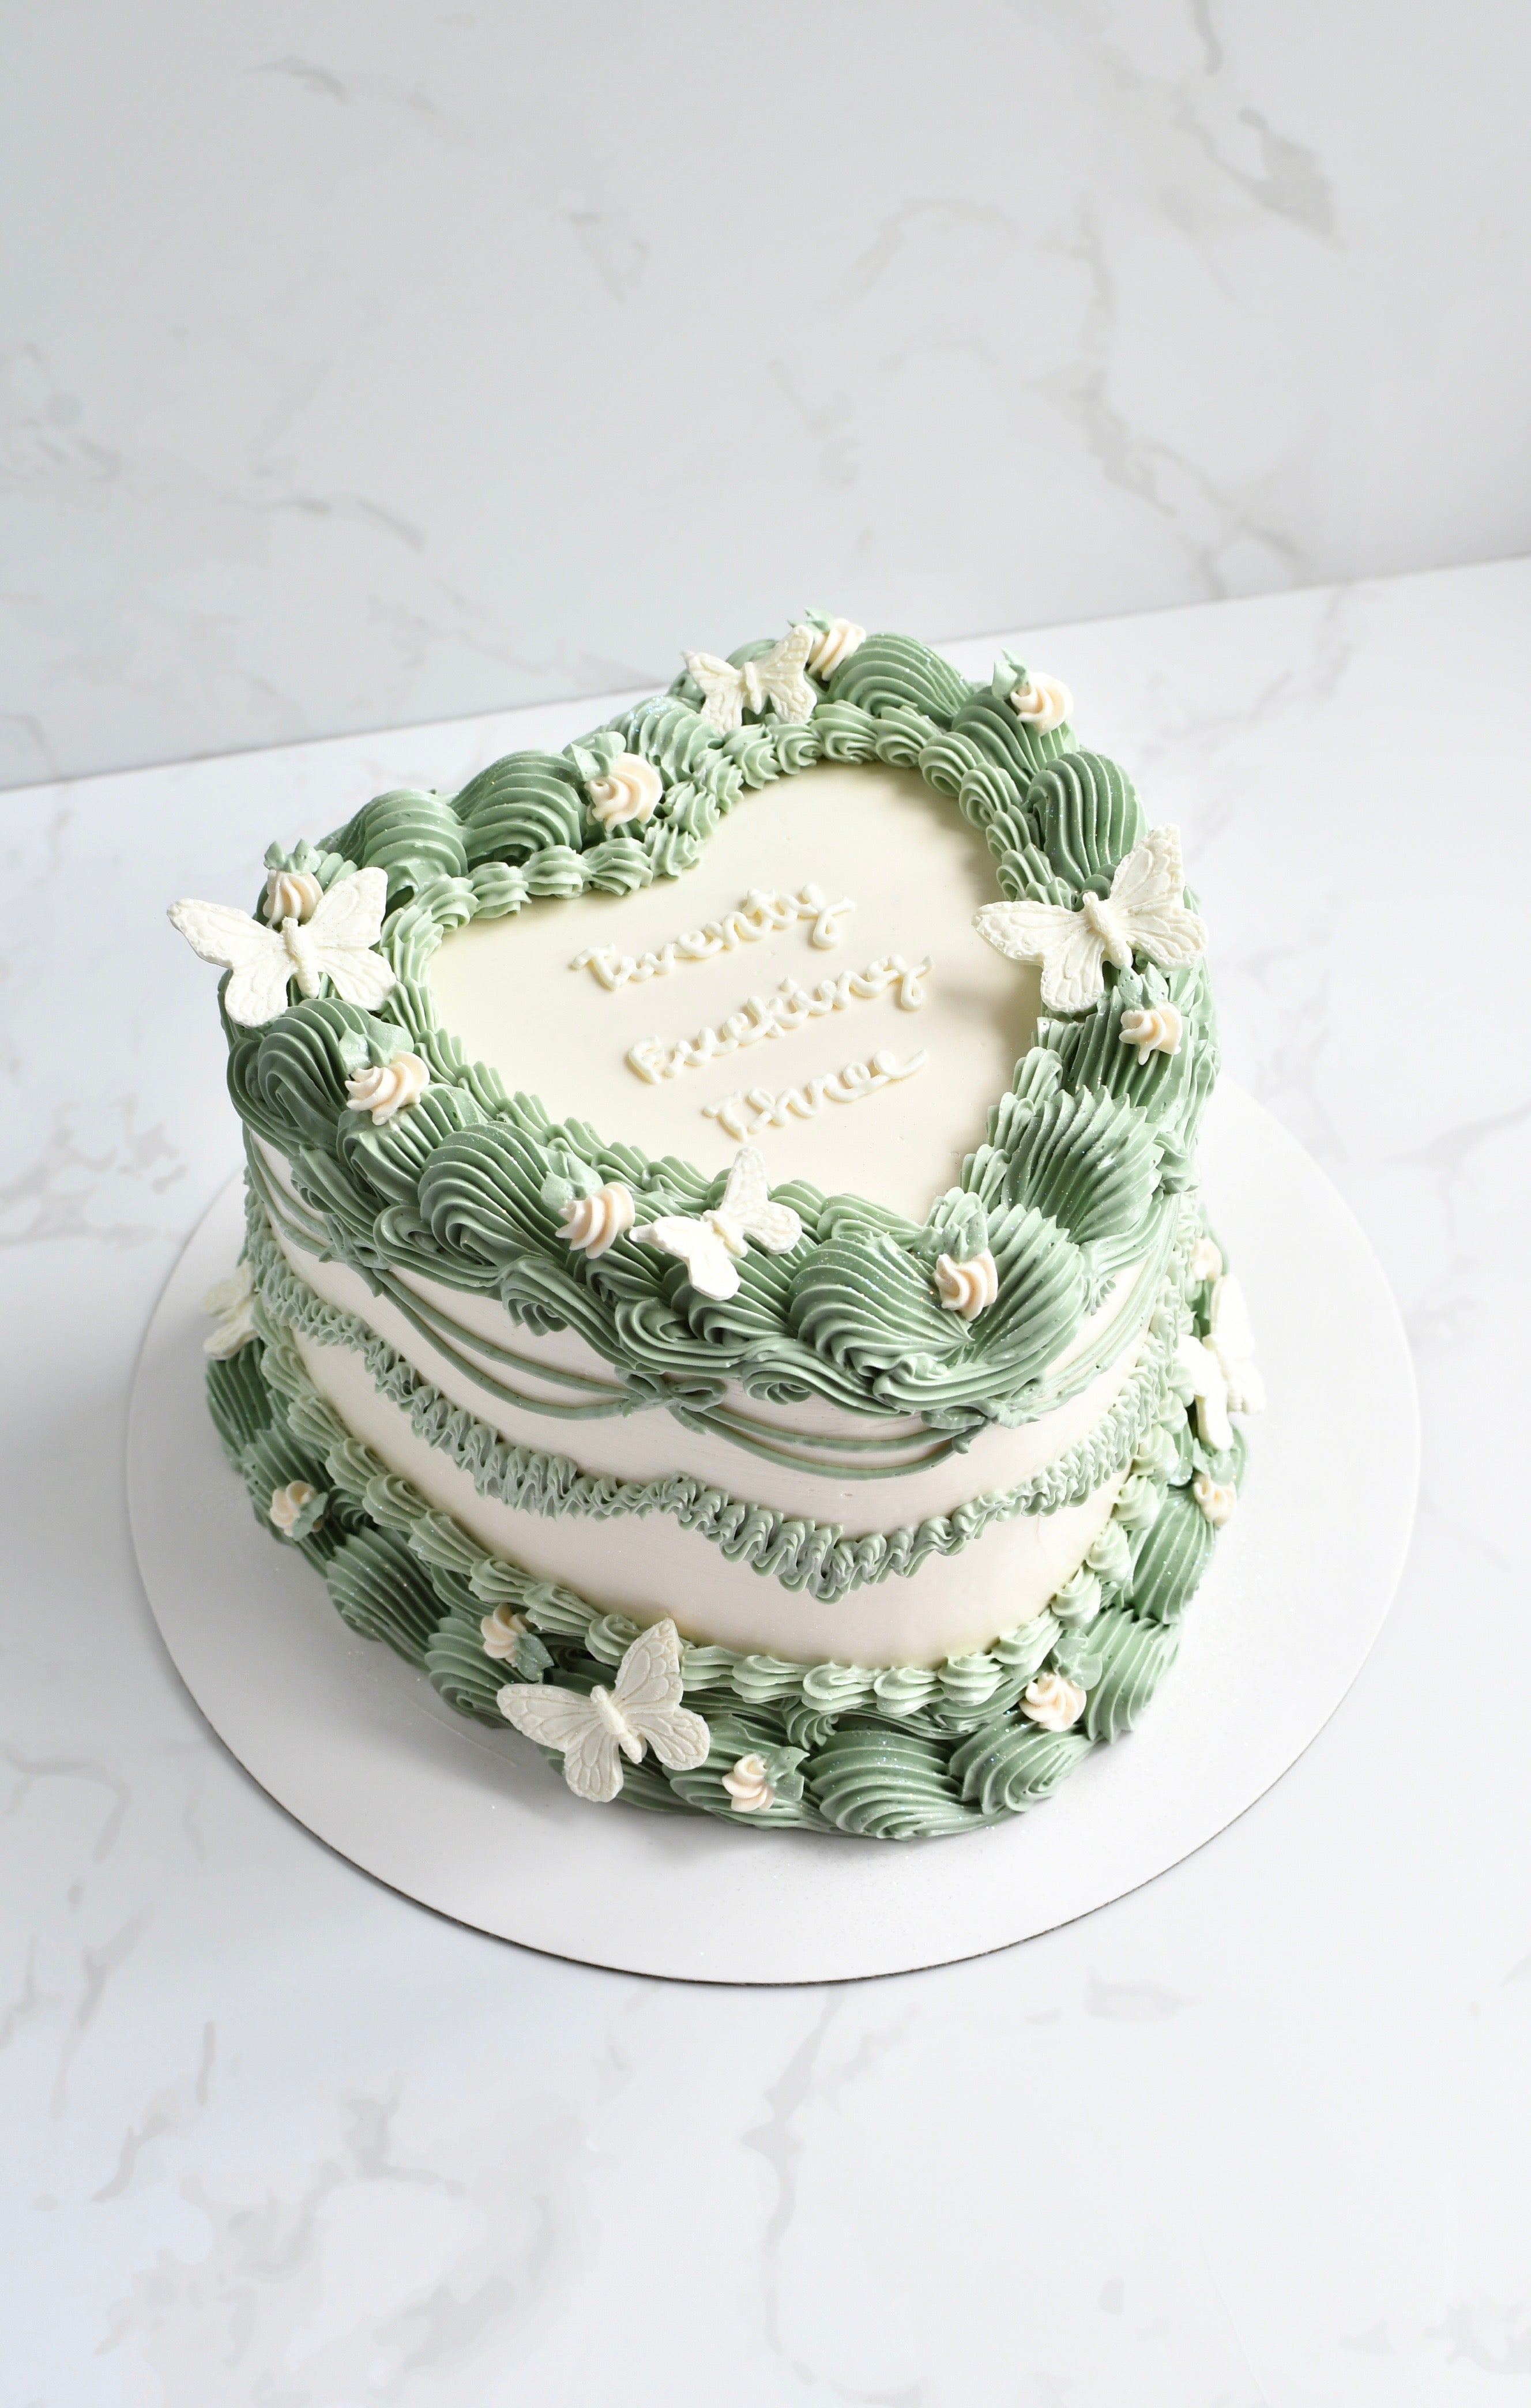 Happy Birthday vintage cake | Vintage birthday cakes, Pretty birthday cakes,  Cake designs birthday